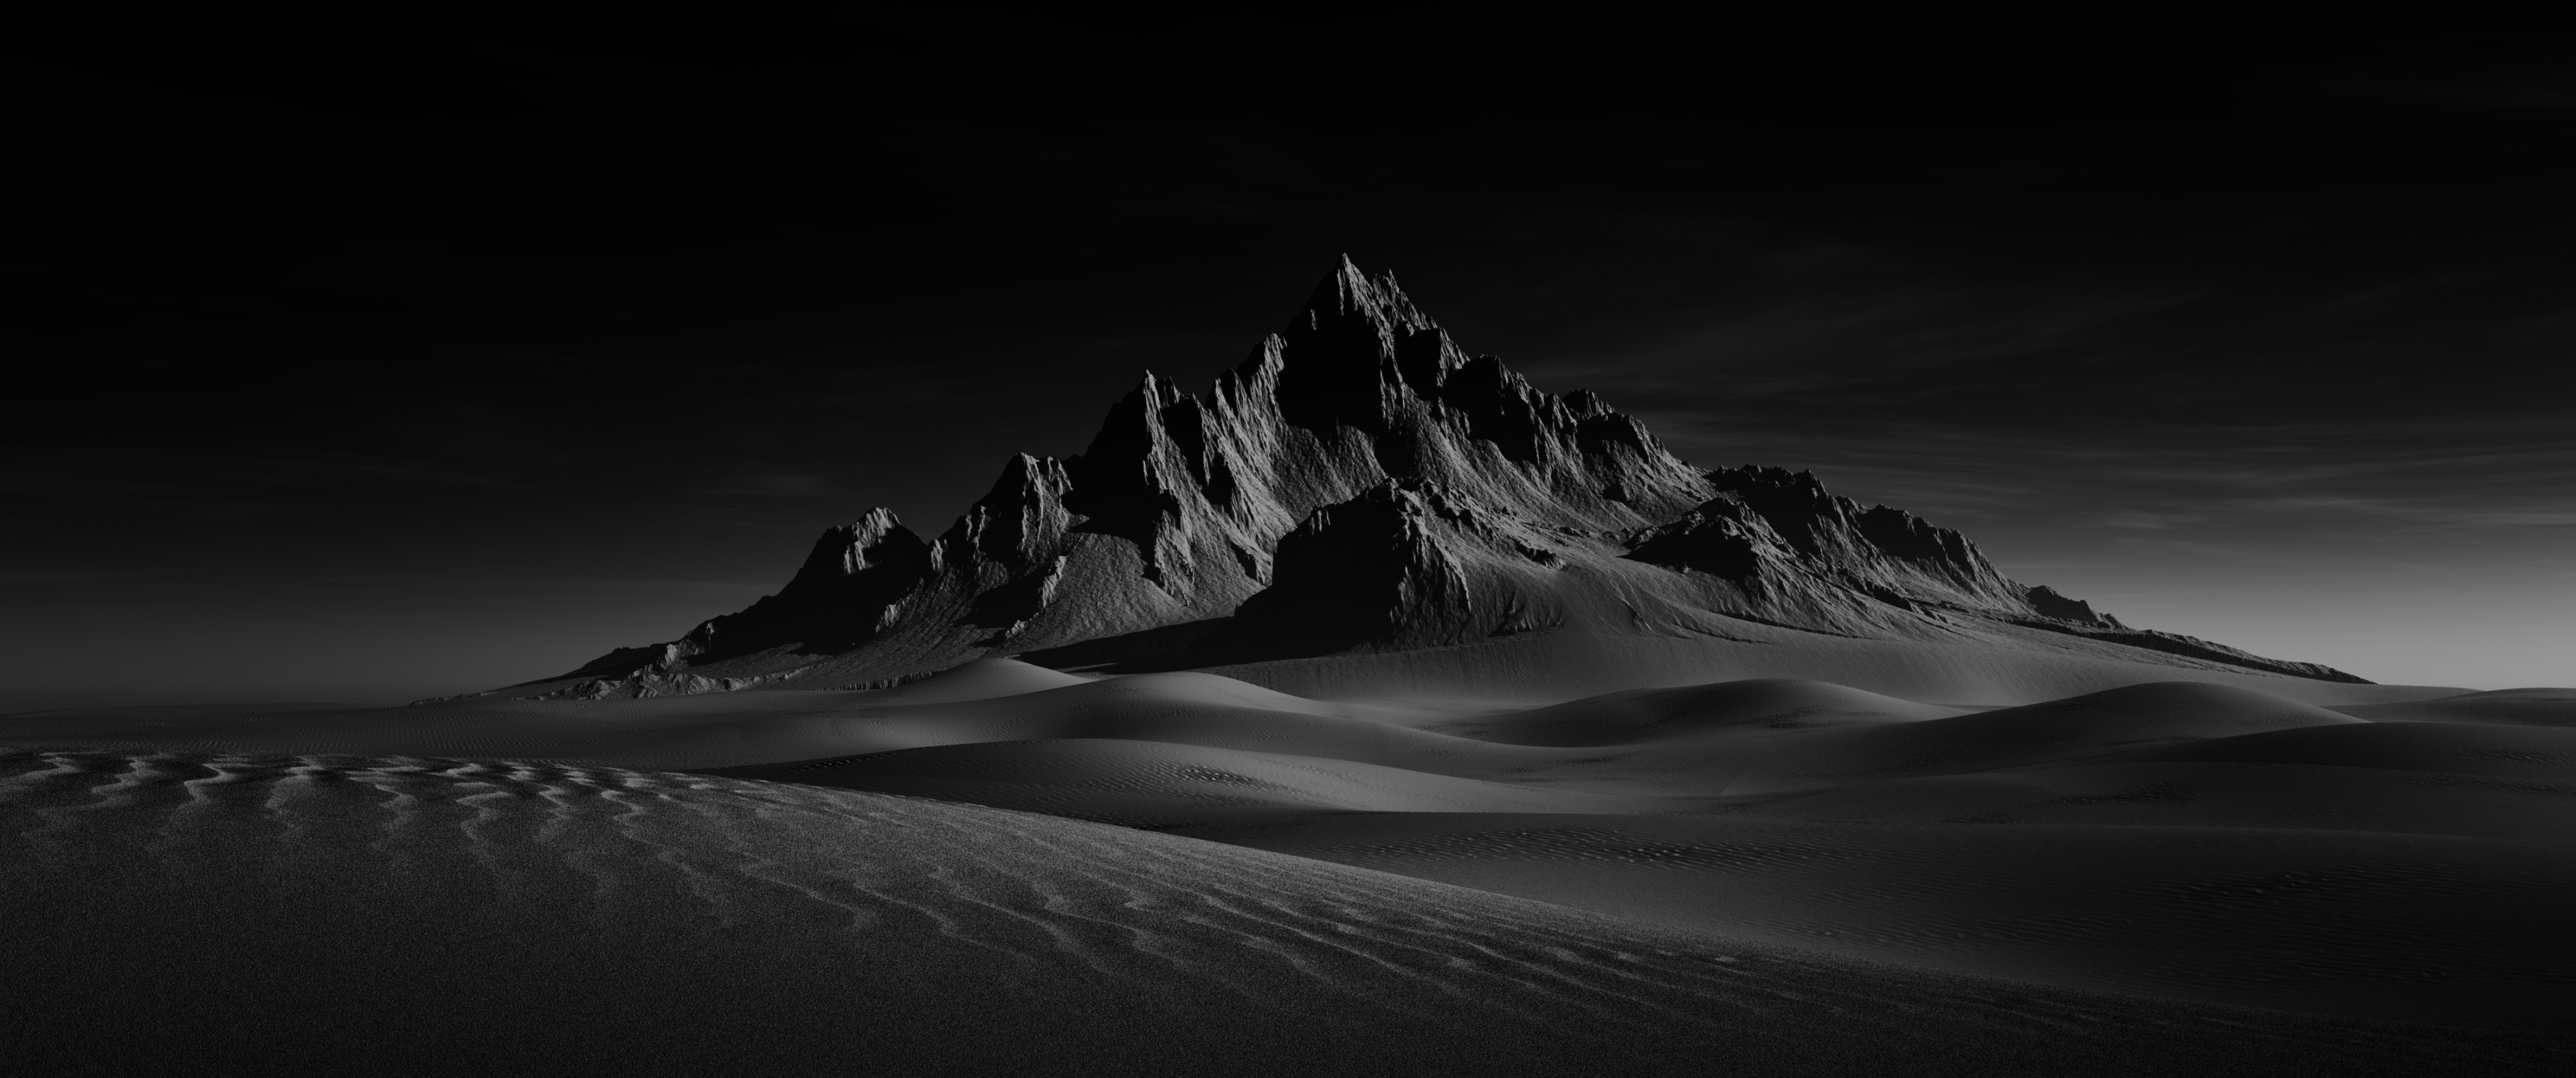 [صورة: desert-doom-sand-dunes-dark-background-m...0-6409.jpg]